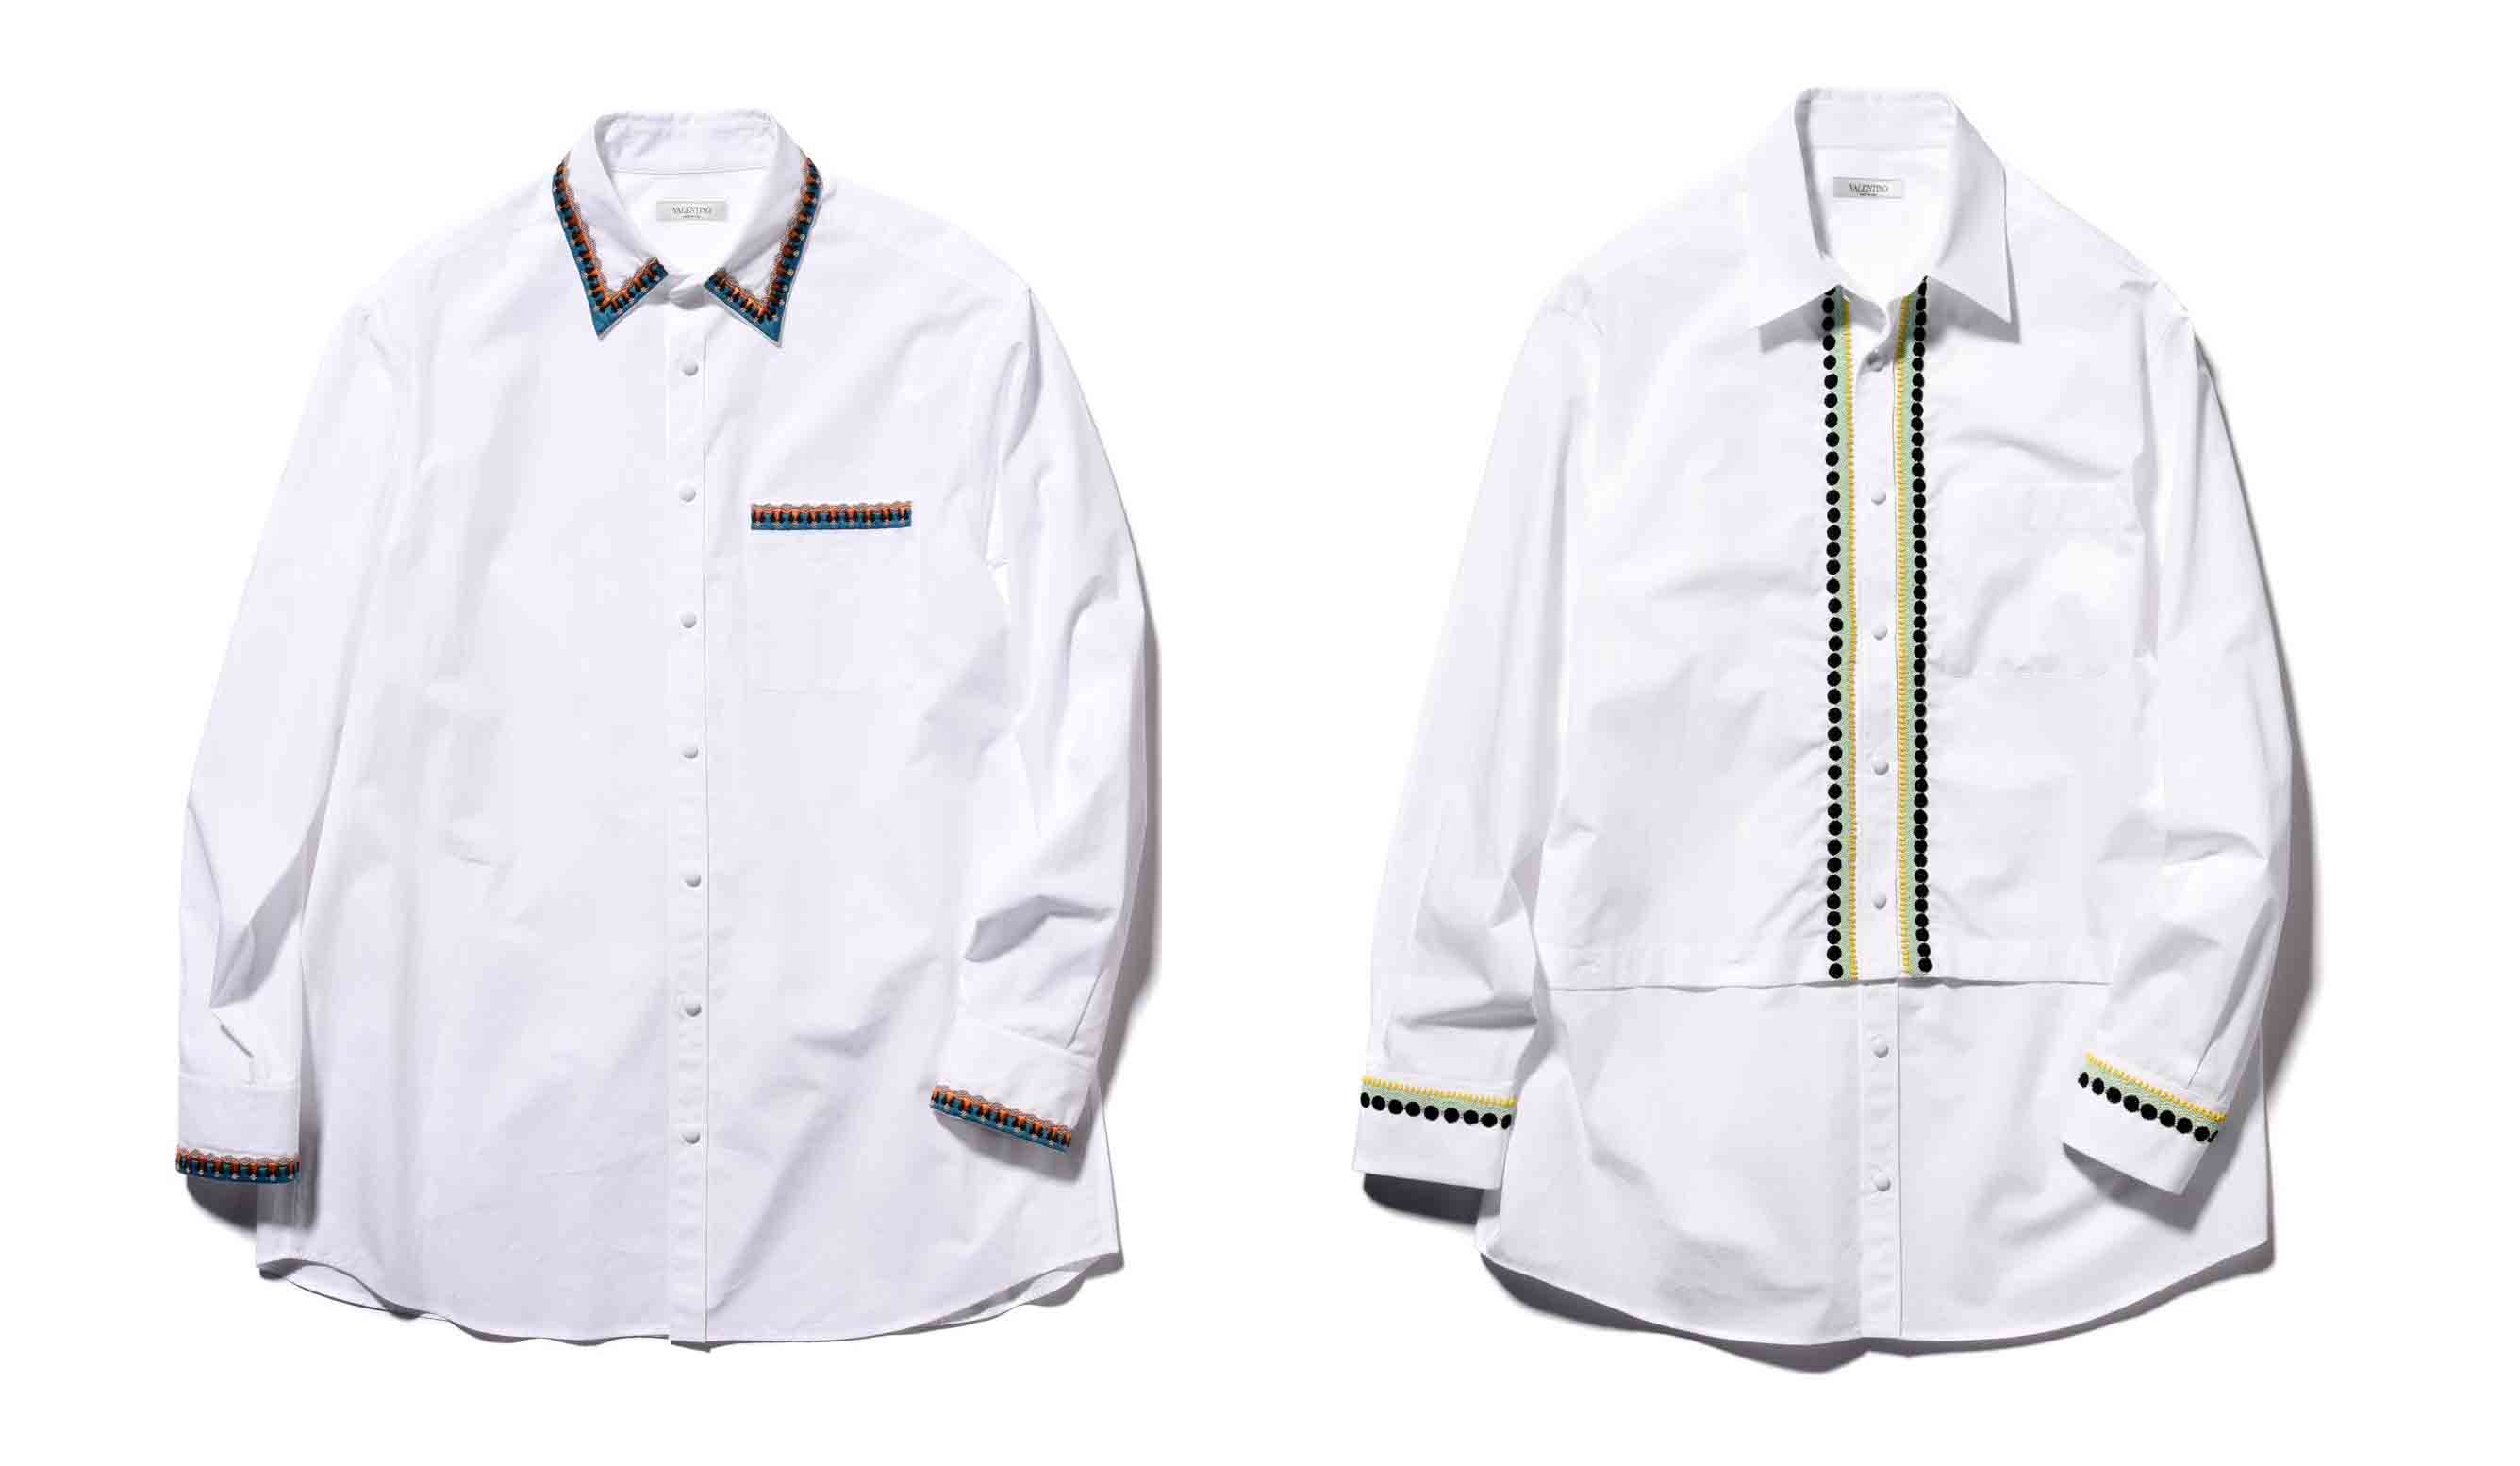 ヴァレンティノのビーズと刺繍が施されたビッグシルエットの白シャツ